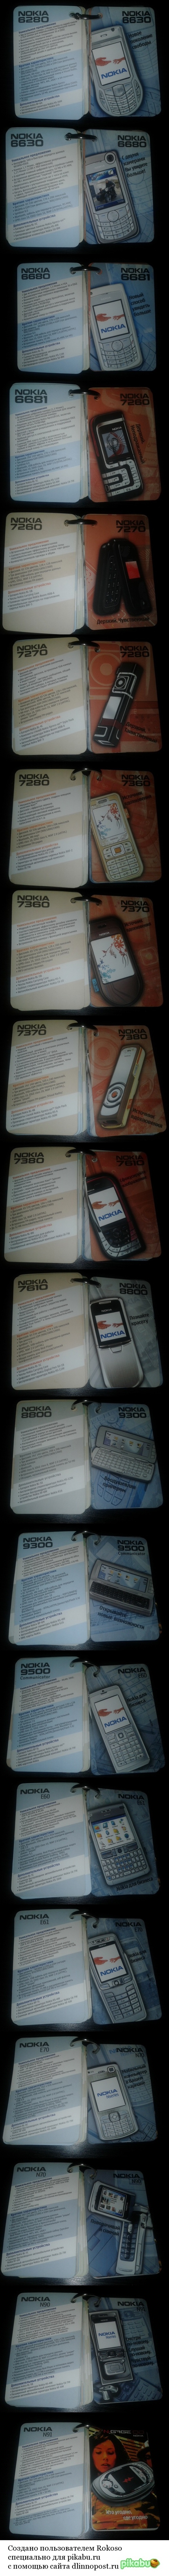 Nokia mini-catalogue - Nokia, Nostalgia, Longpost